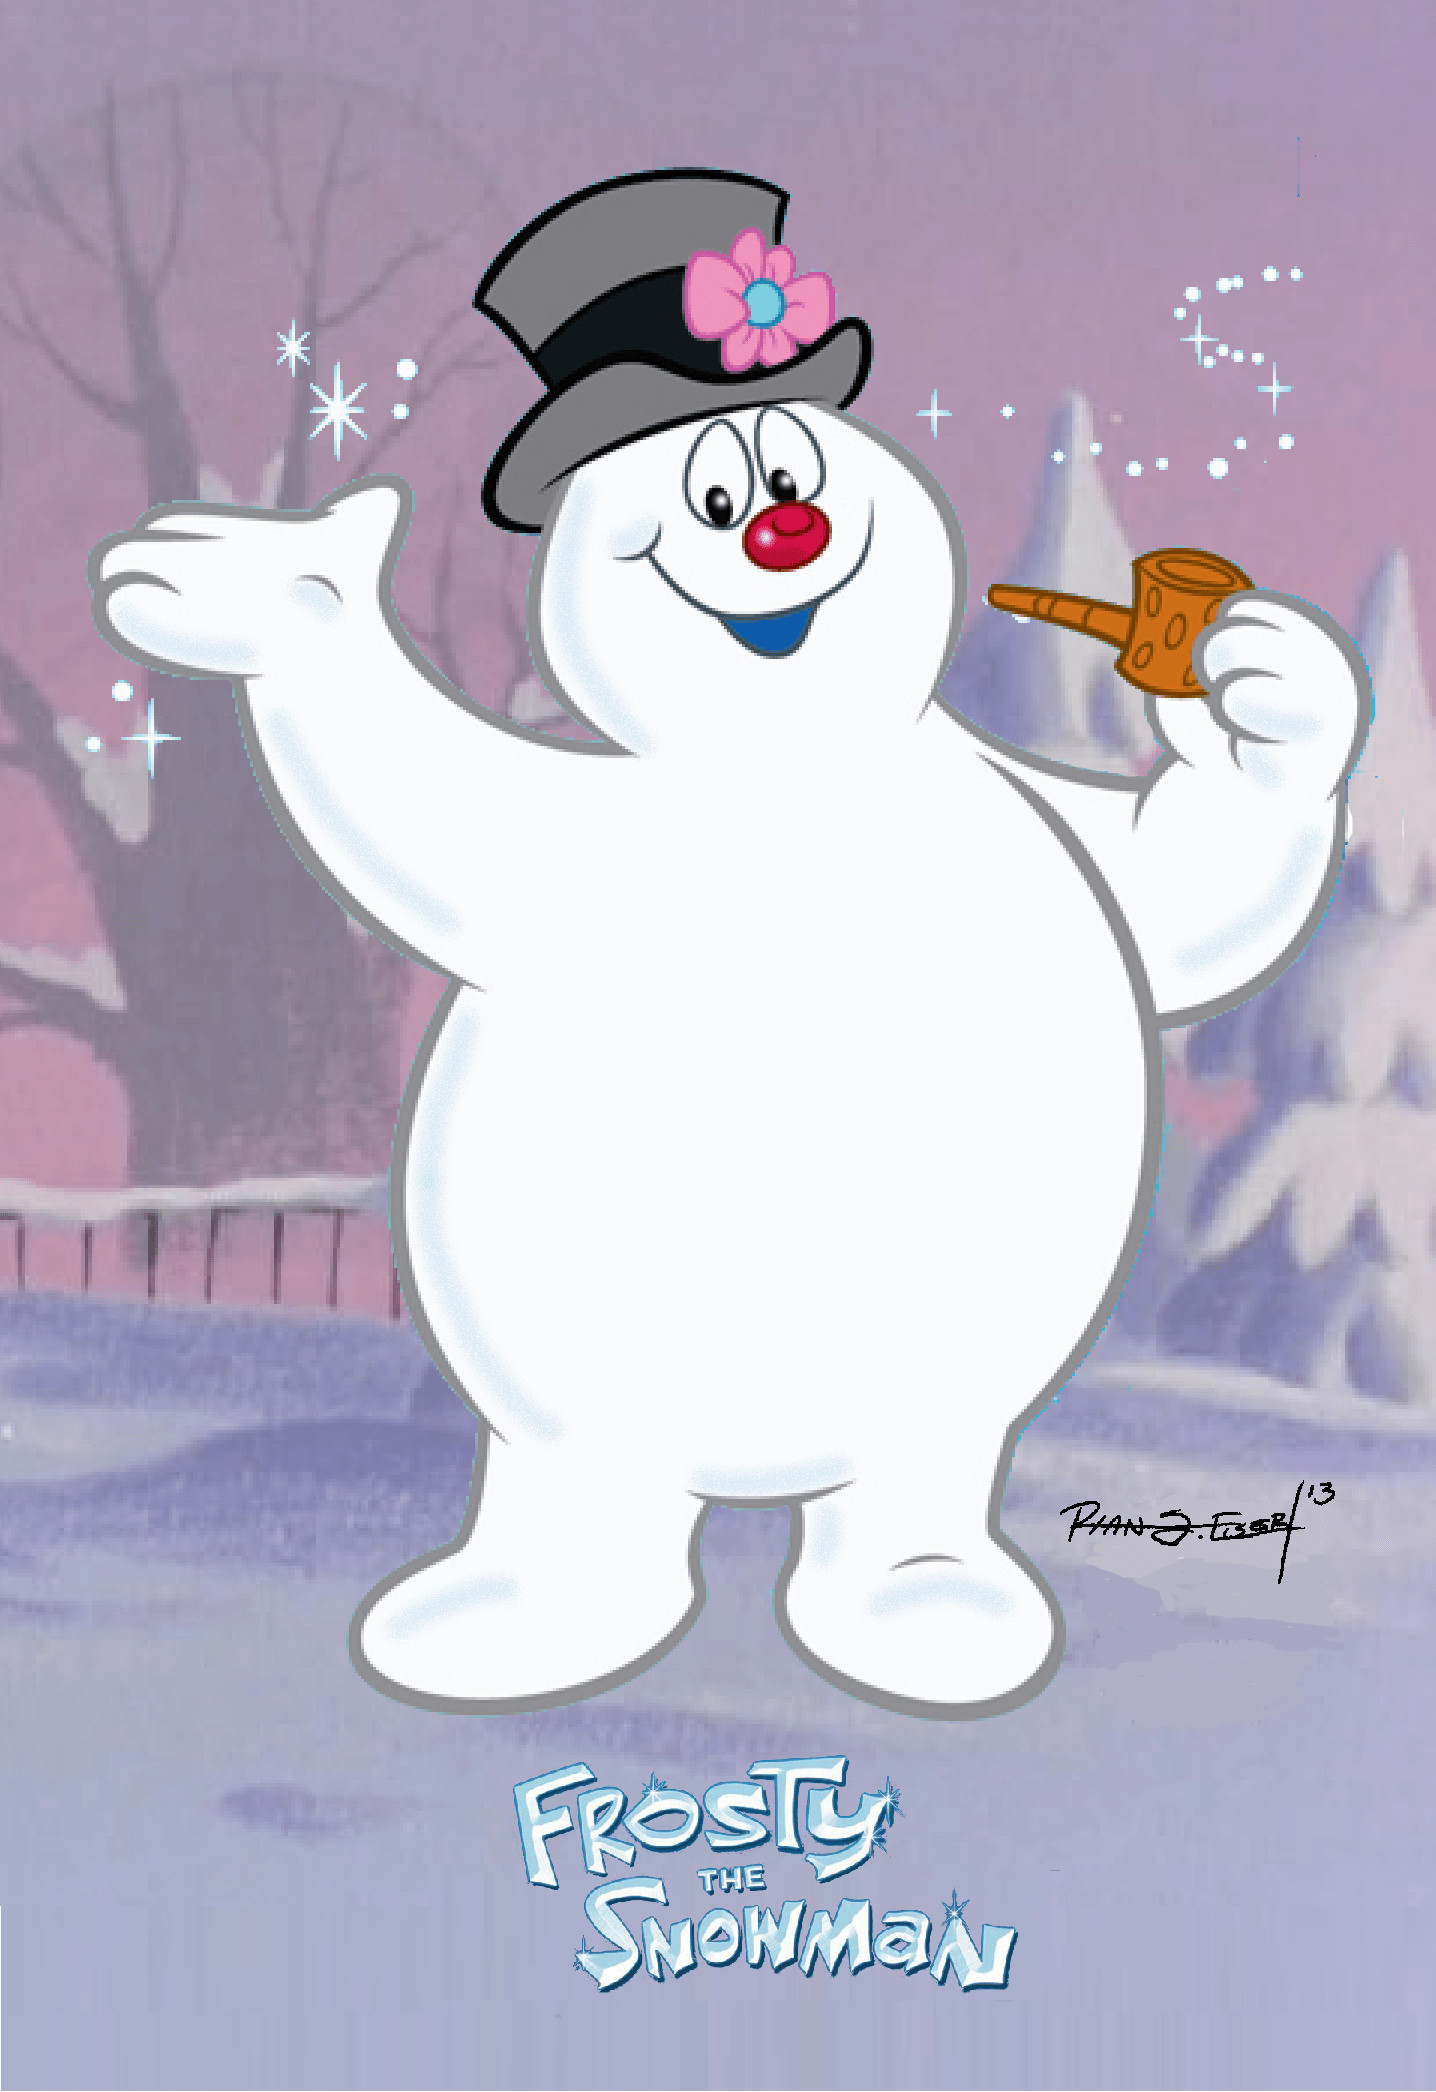 1436x2092 Similiar Frosty The Snowman Rabbit Keywords